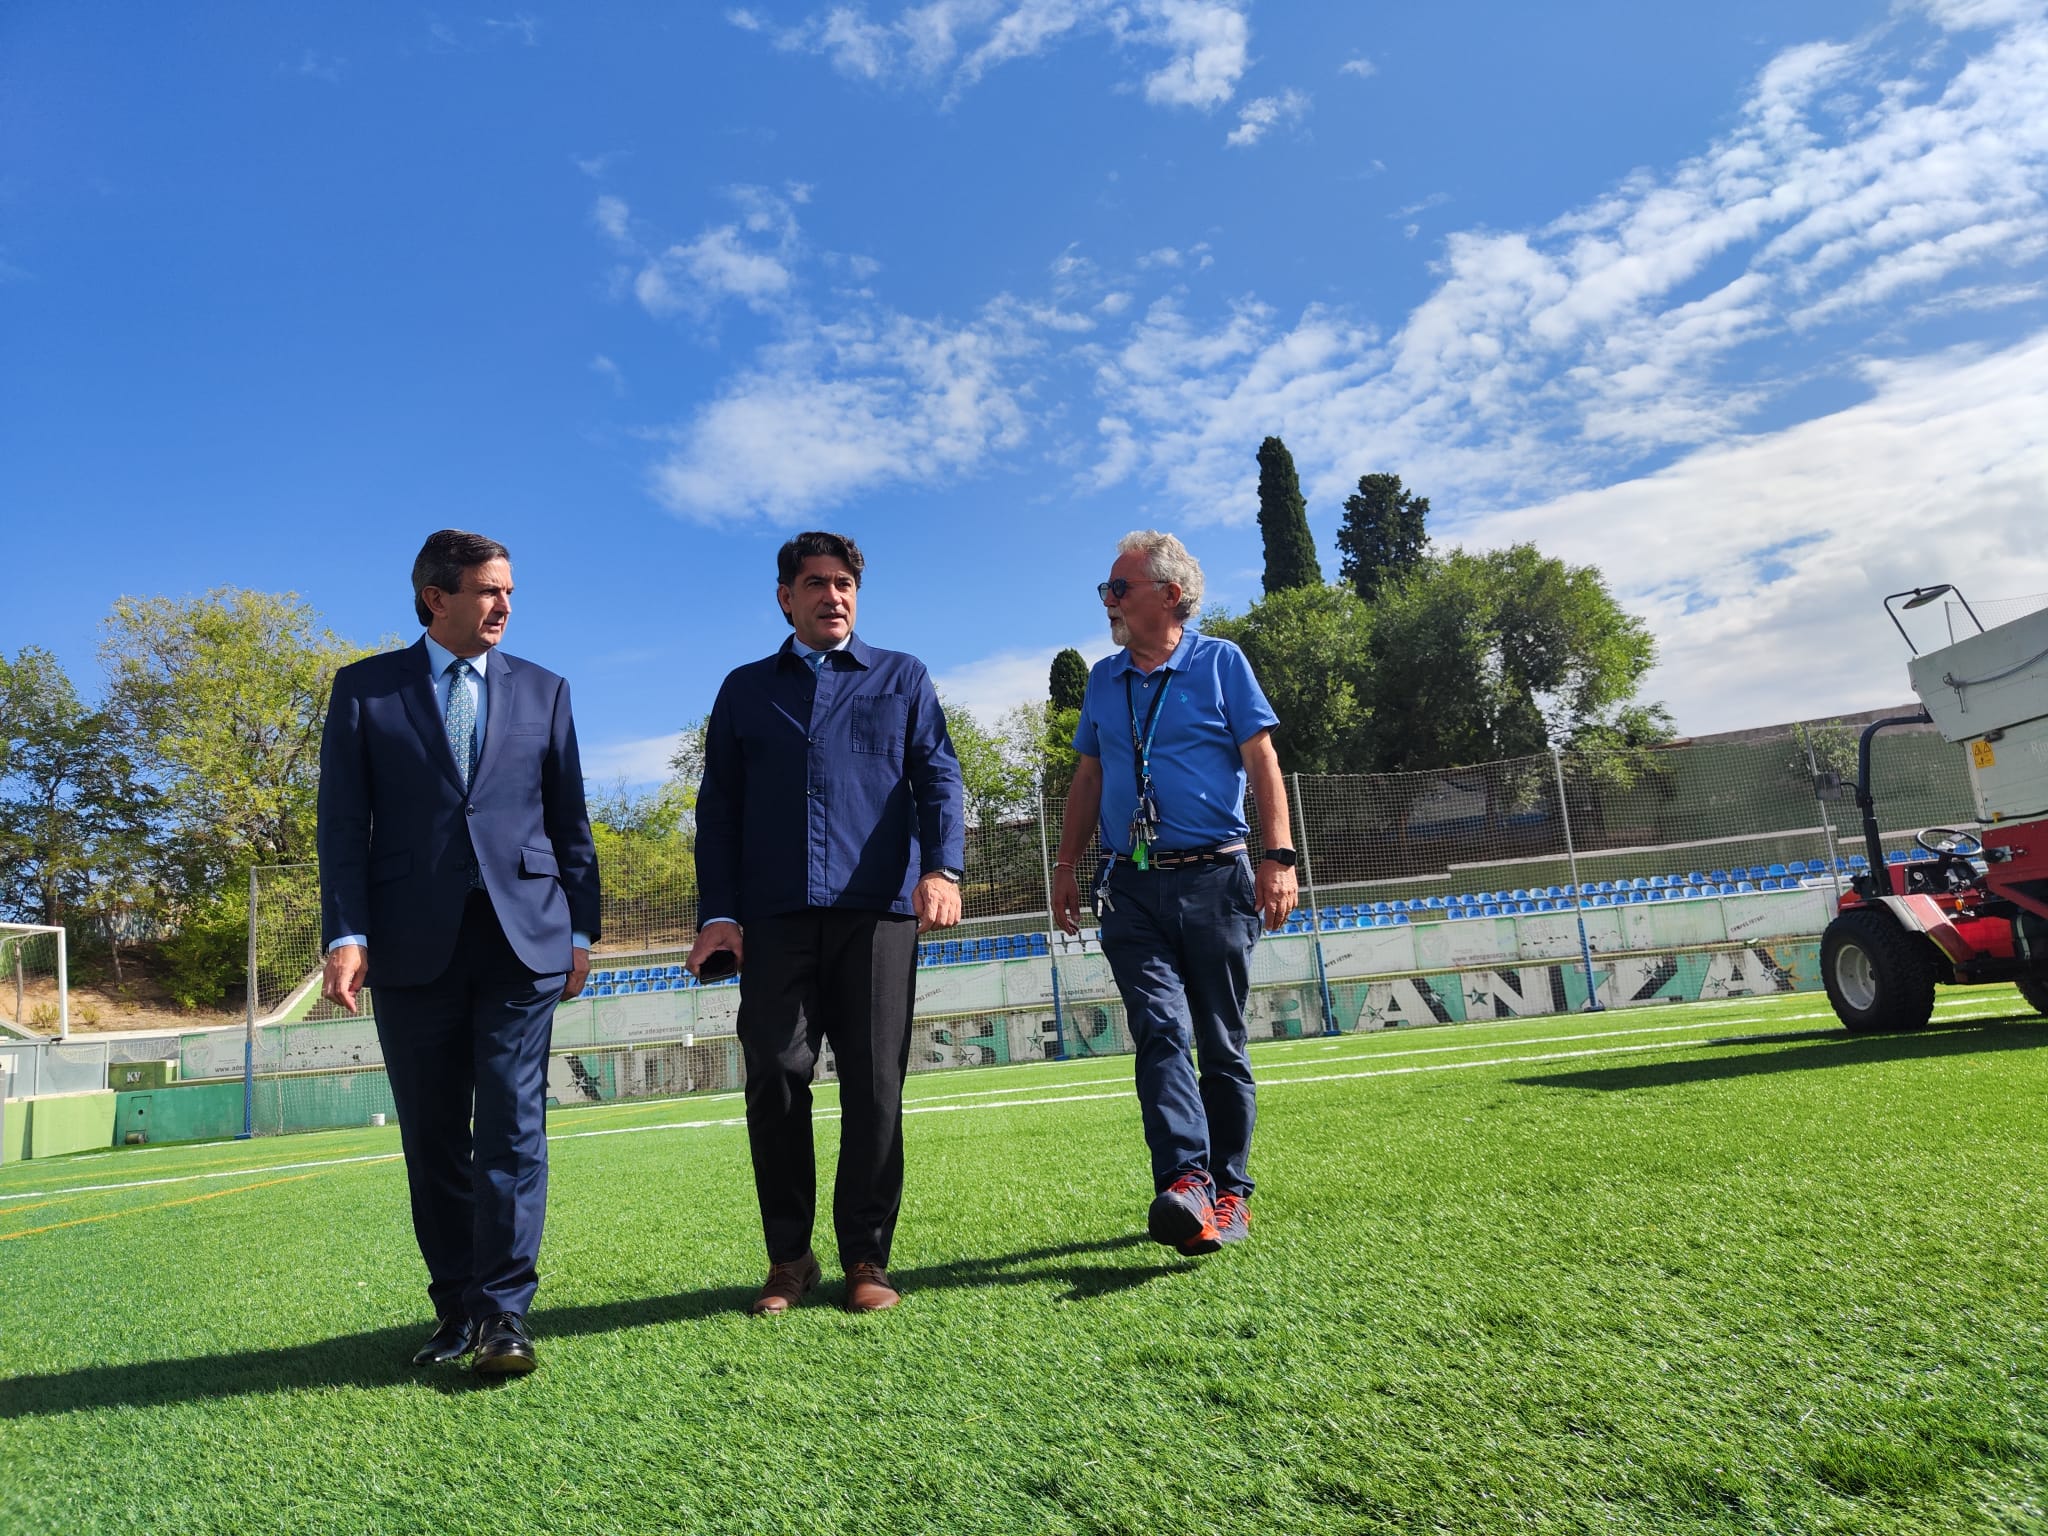 El concejal de Hortaleza, David Pérez, ha visitado hoy las obras de mejora de la Instalación Deportiva Básica Esperanza I